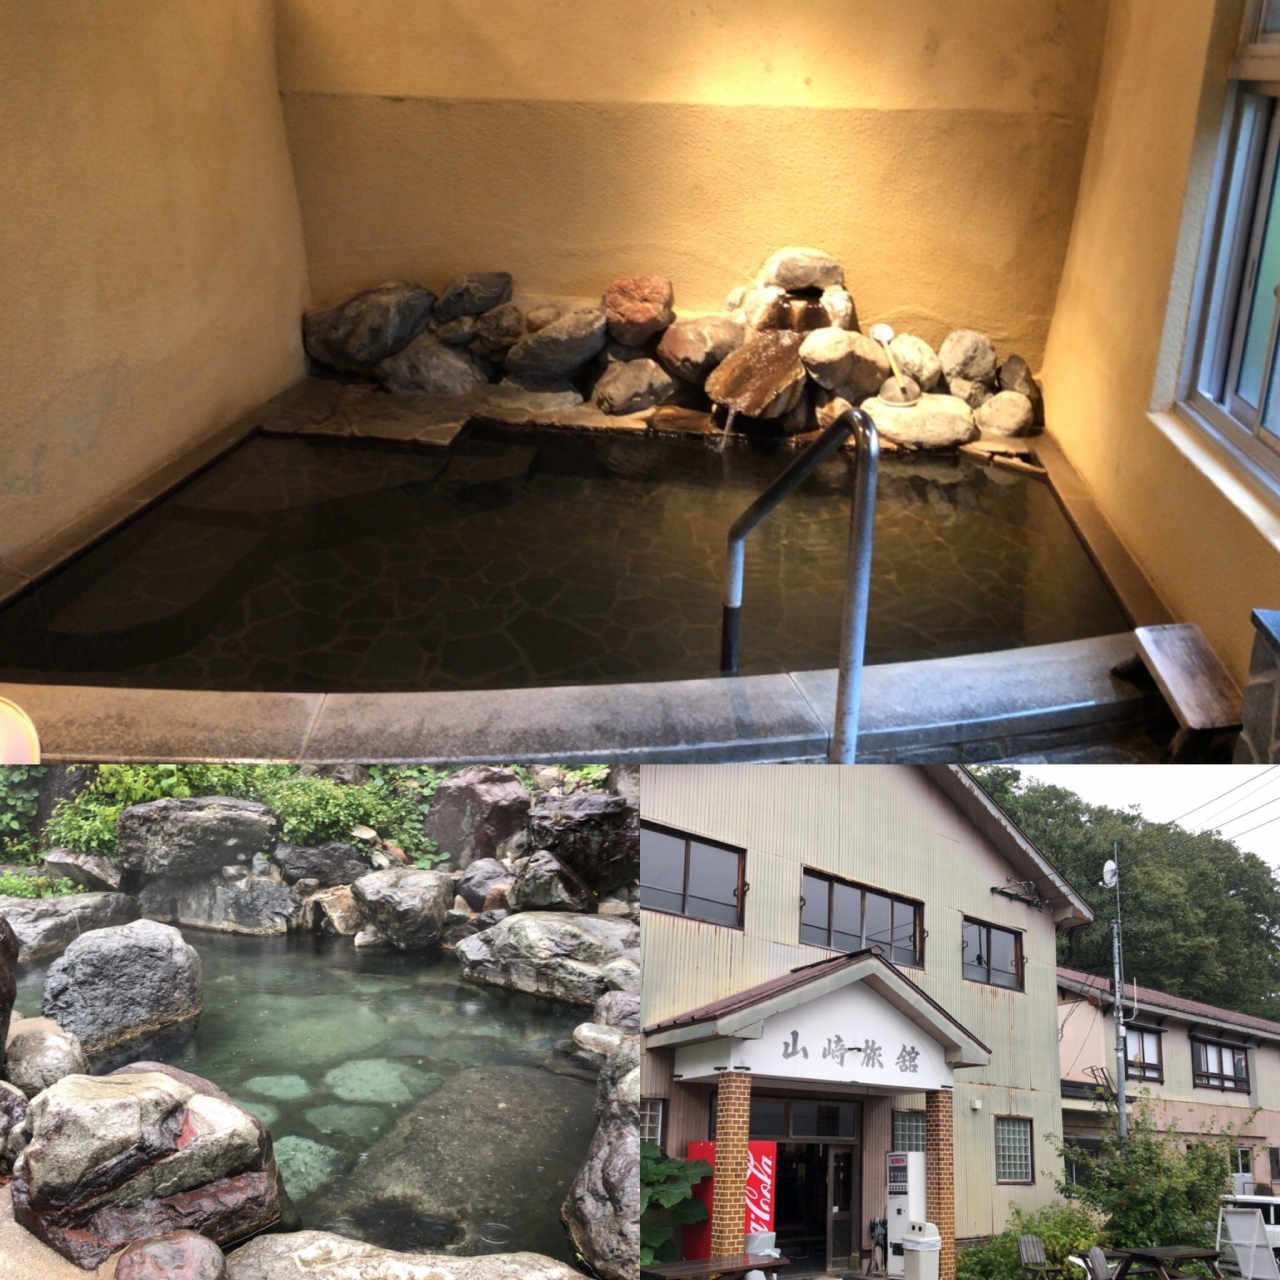 岩間 温泉 秘 湯 の 一 軒 宿 山崎 旅館